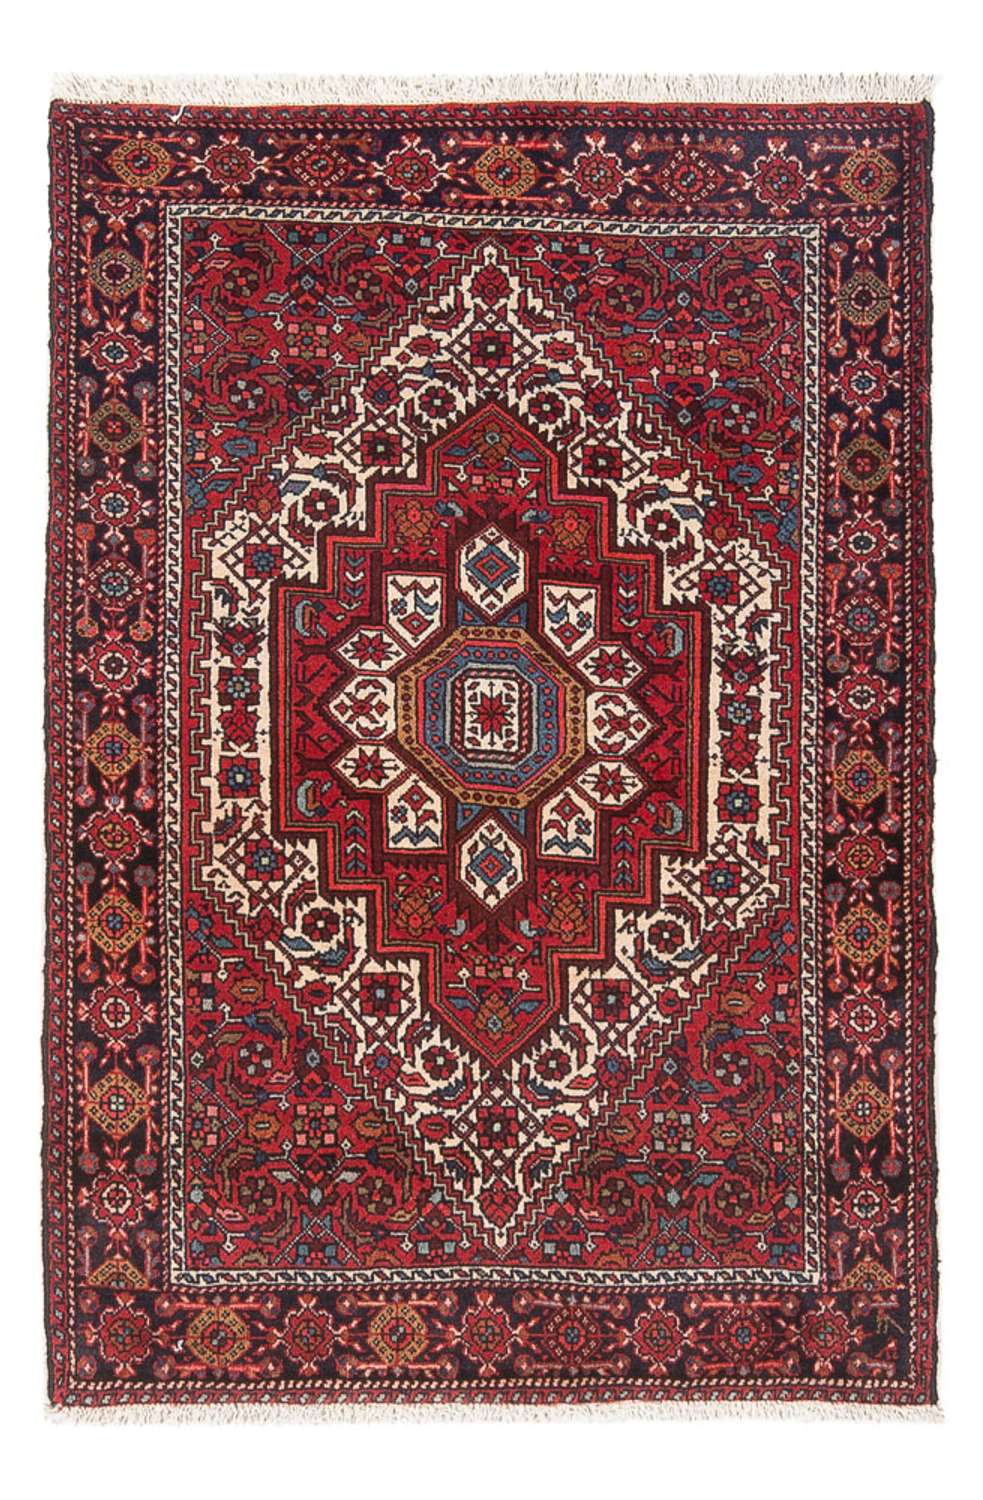 Tapis persan - Nomadic - 111 x 68 cm - rouge clair